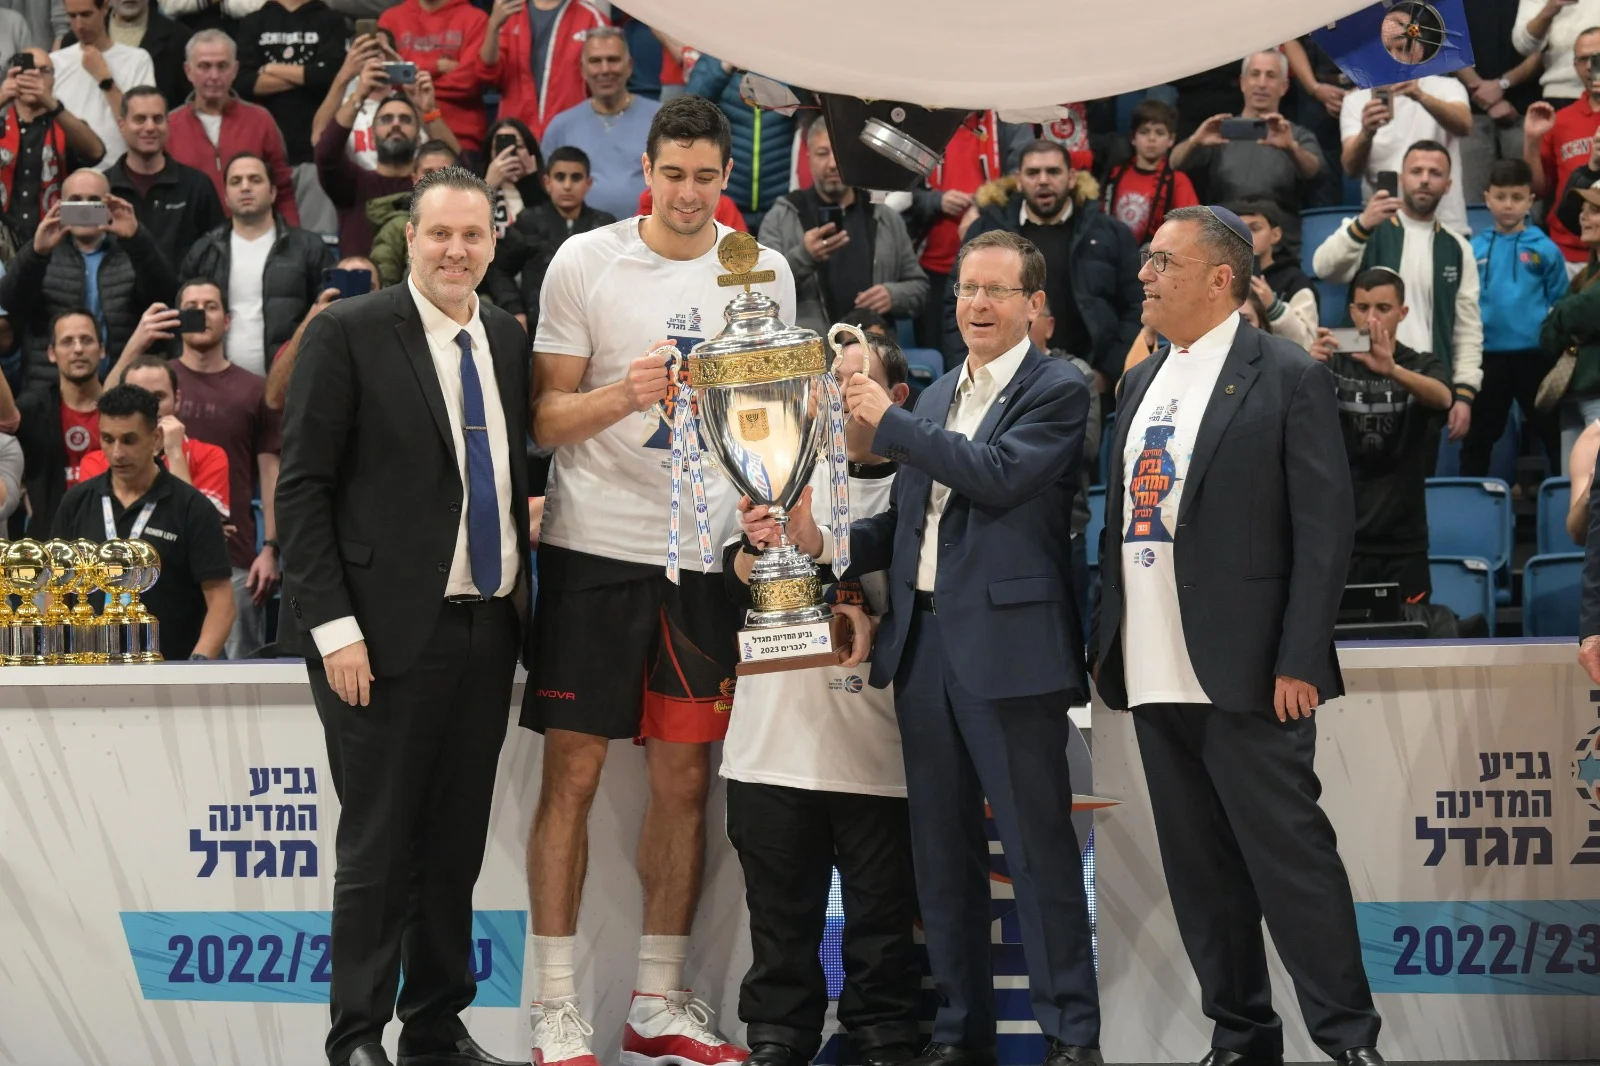 הנשיא הרצוג מעניק את גביע המדינה בכדורסל להפועל ירושלים